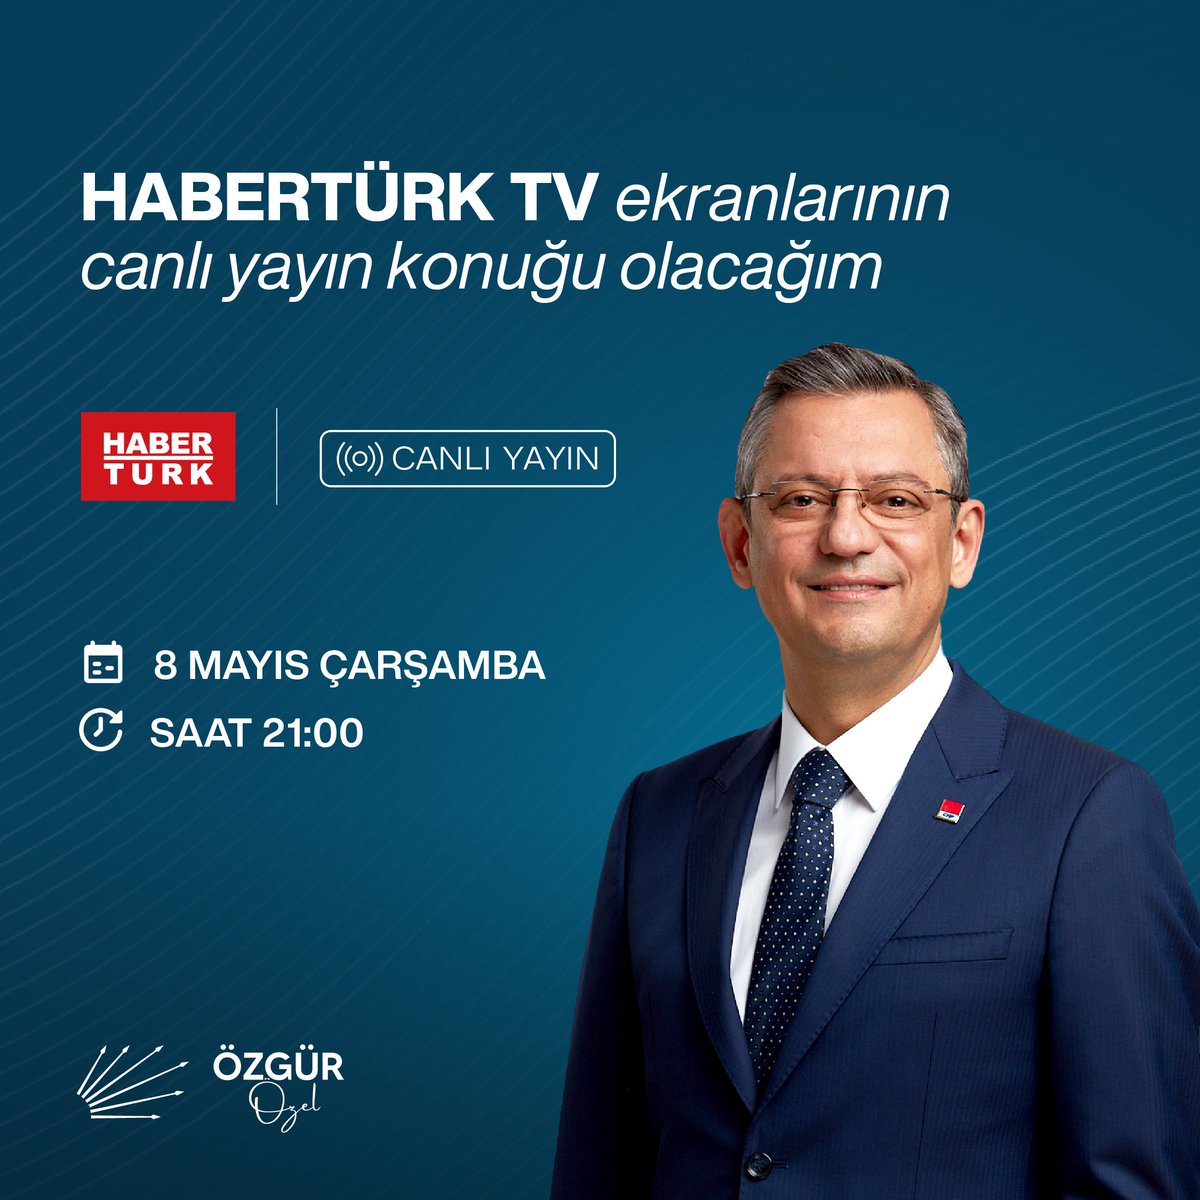 Bugün HaberTürk TV'de gazetecilerin sorularını yanıtlayacağım. ⏰ 21.00